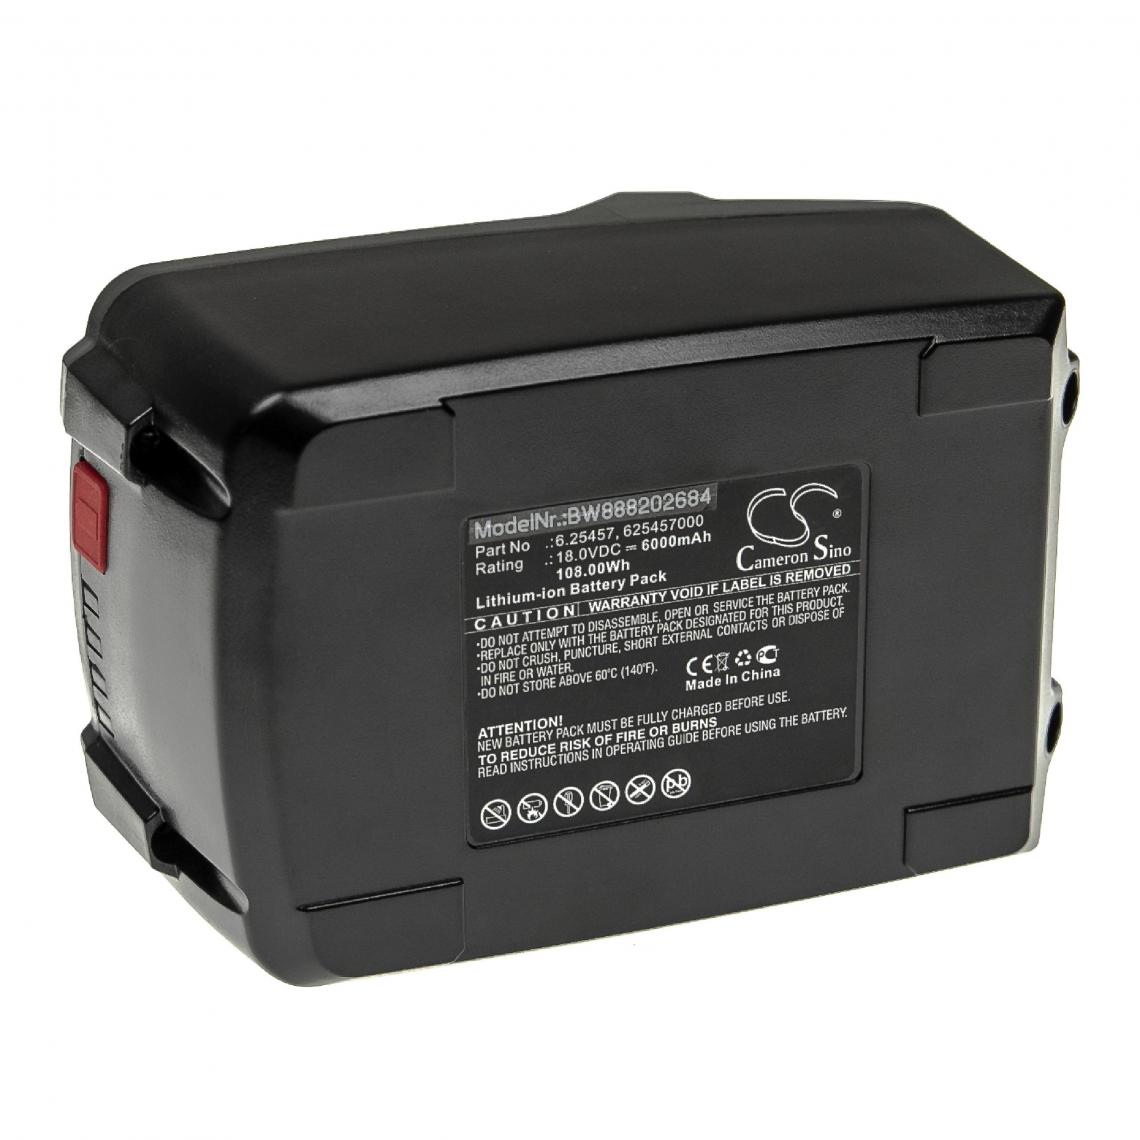 Vhbw - vhbw Batterie compatible avec Metabo ULA 14.4-18 LED, W18LTX, W 18 LTX 115, W 18 LTX 125 outil électrique (6000mAh Li-ion 18 V) - Autre appareil de mesure